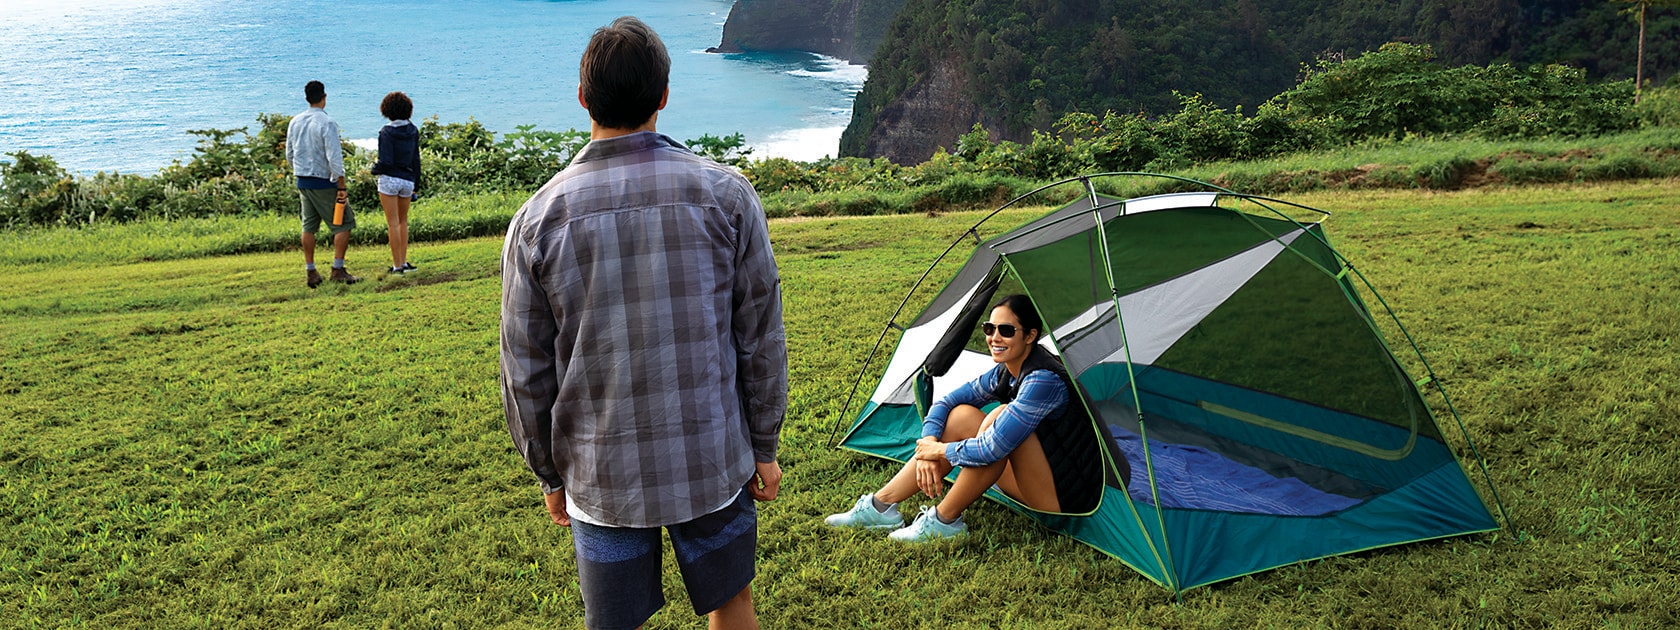 Mann stehend neben einer Frau, die in einem Zelt sitzt, auf einem grasigen Hügel mit Blick auf eine Meeresklippe